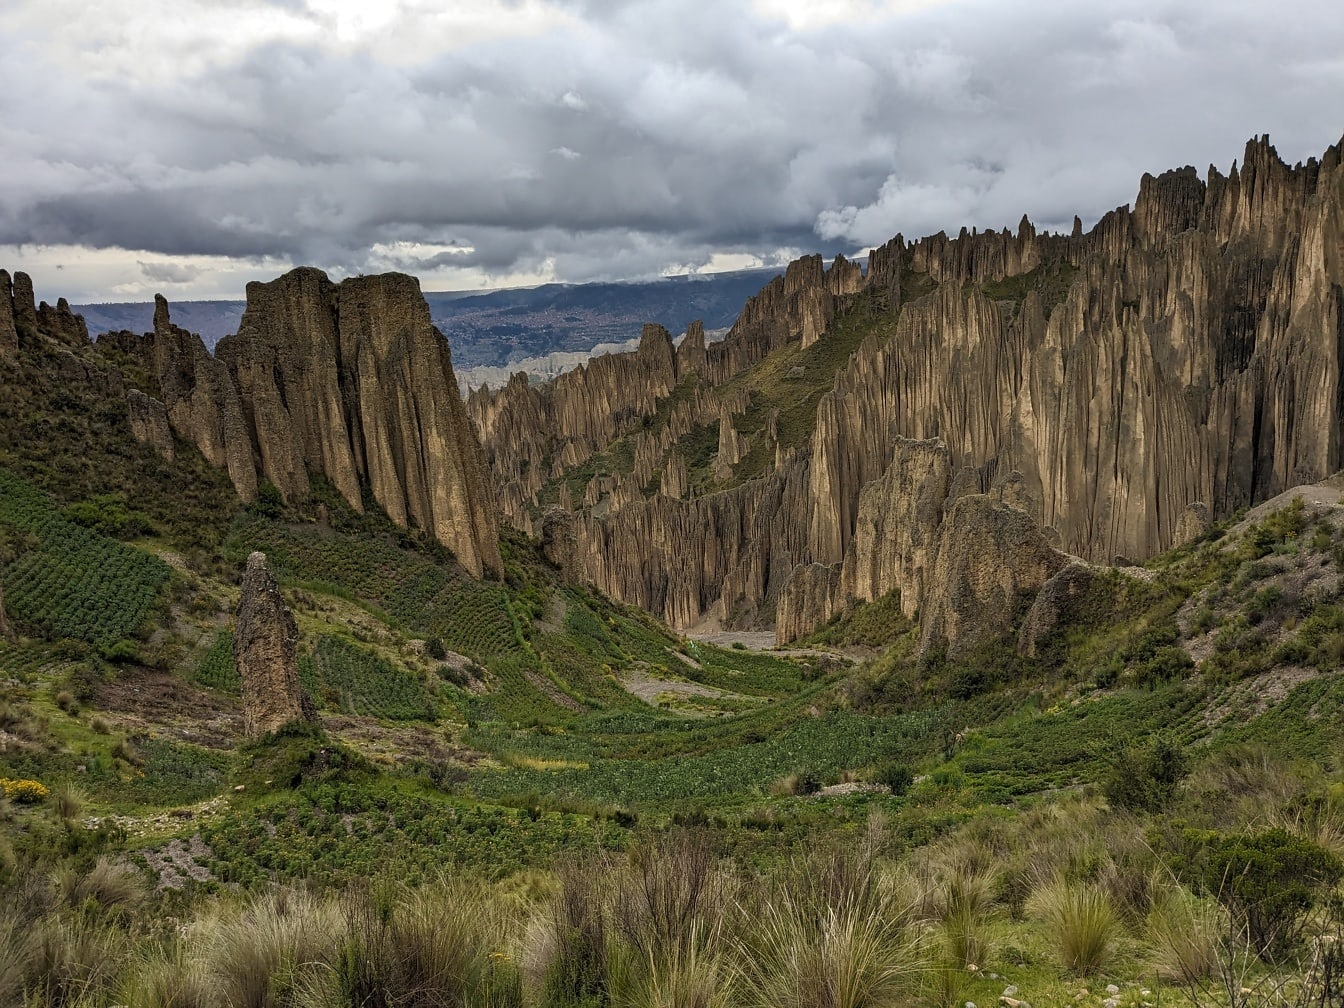 Munți stâncoși cu stânci înalte în valea sufletelor în parcul natural din Bolivia